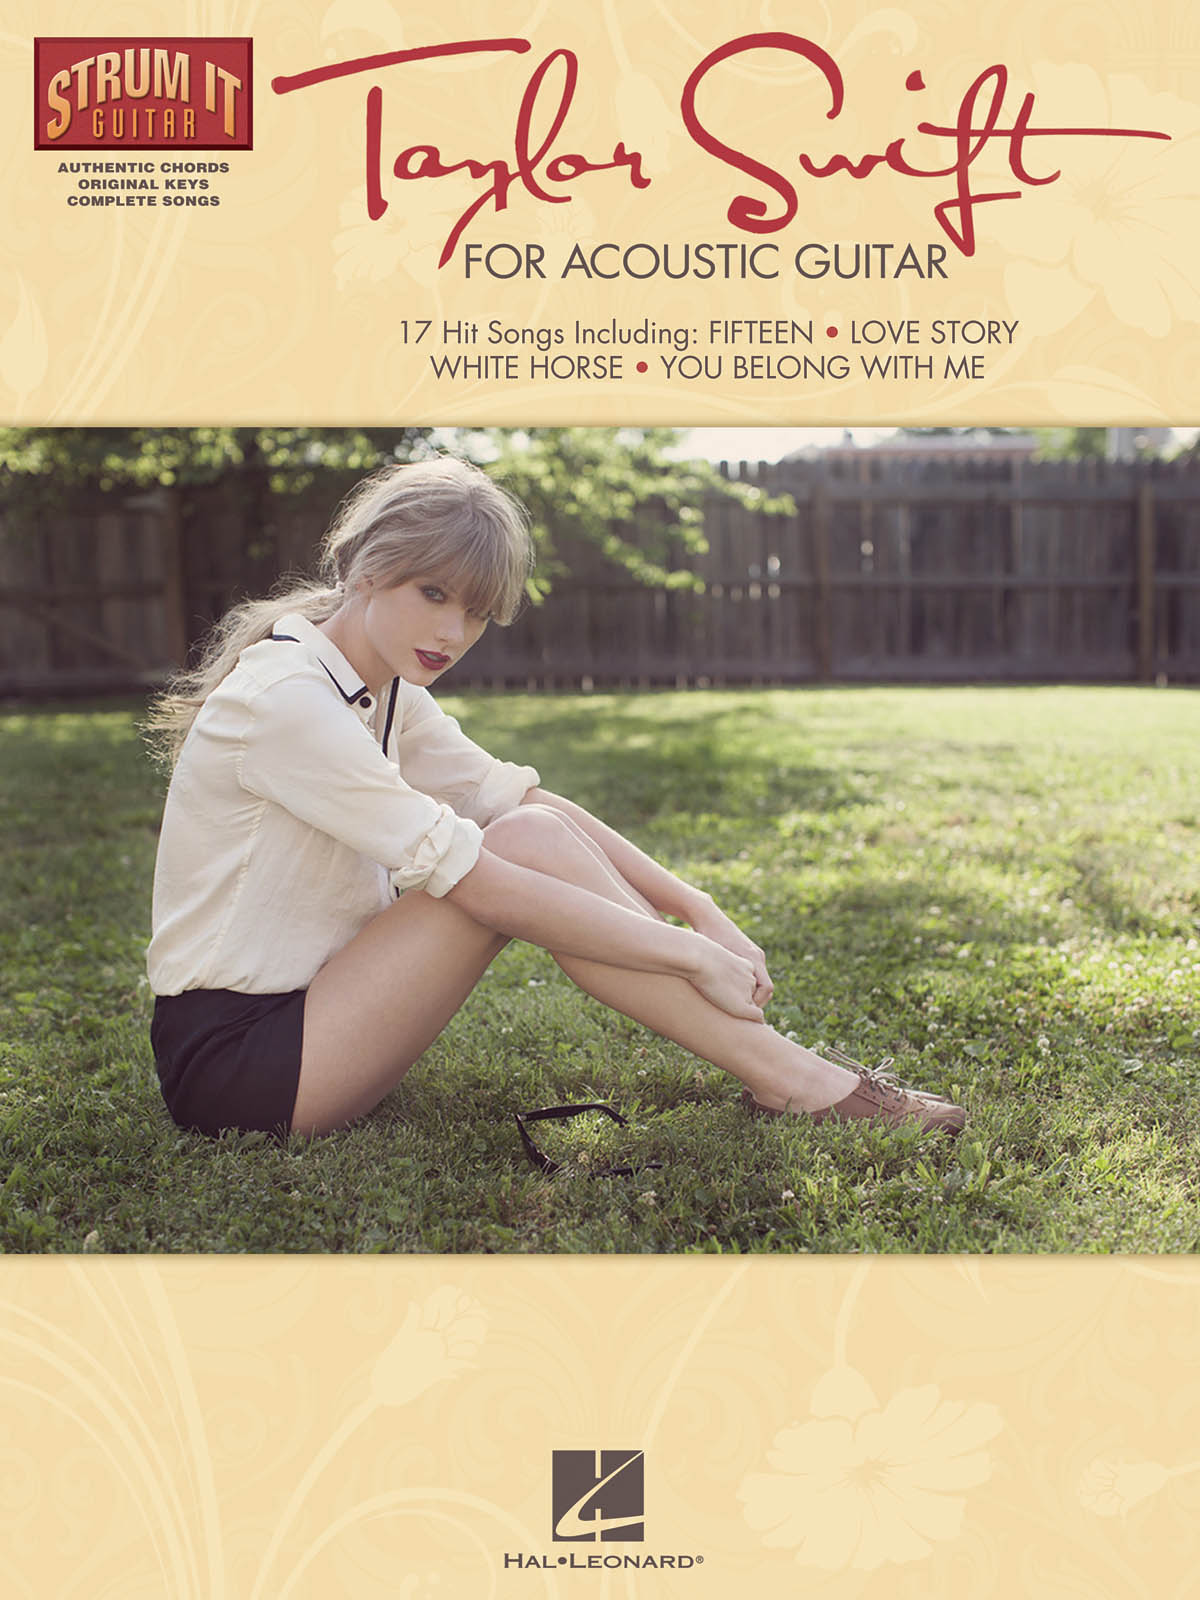 Strum It Guitar: Taylor Swift - melodická linky, akordy a texty